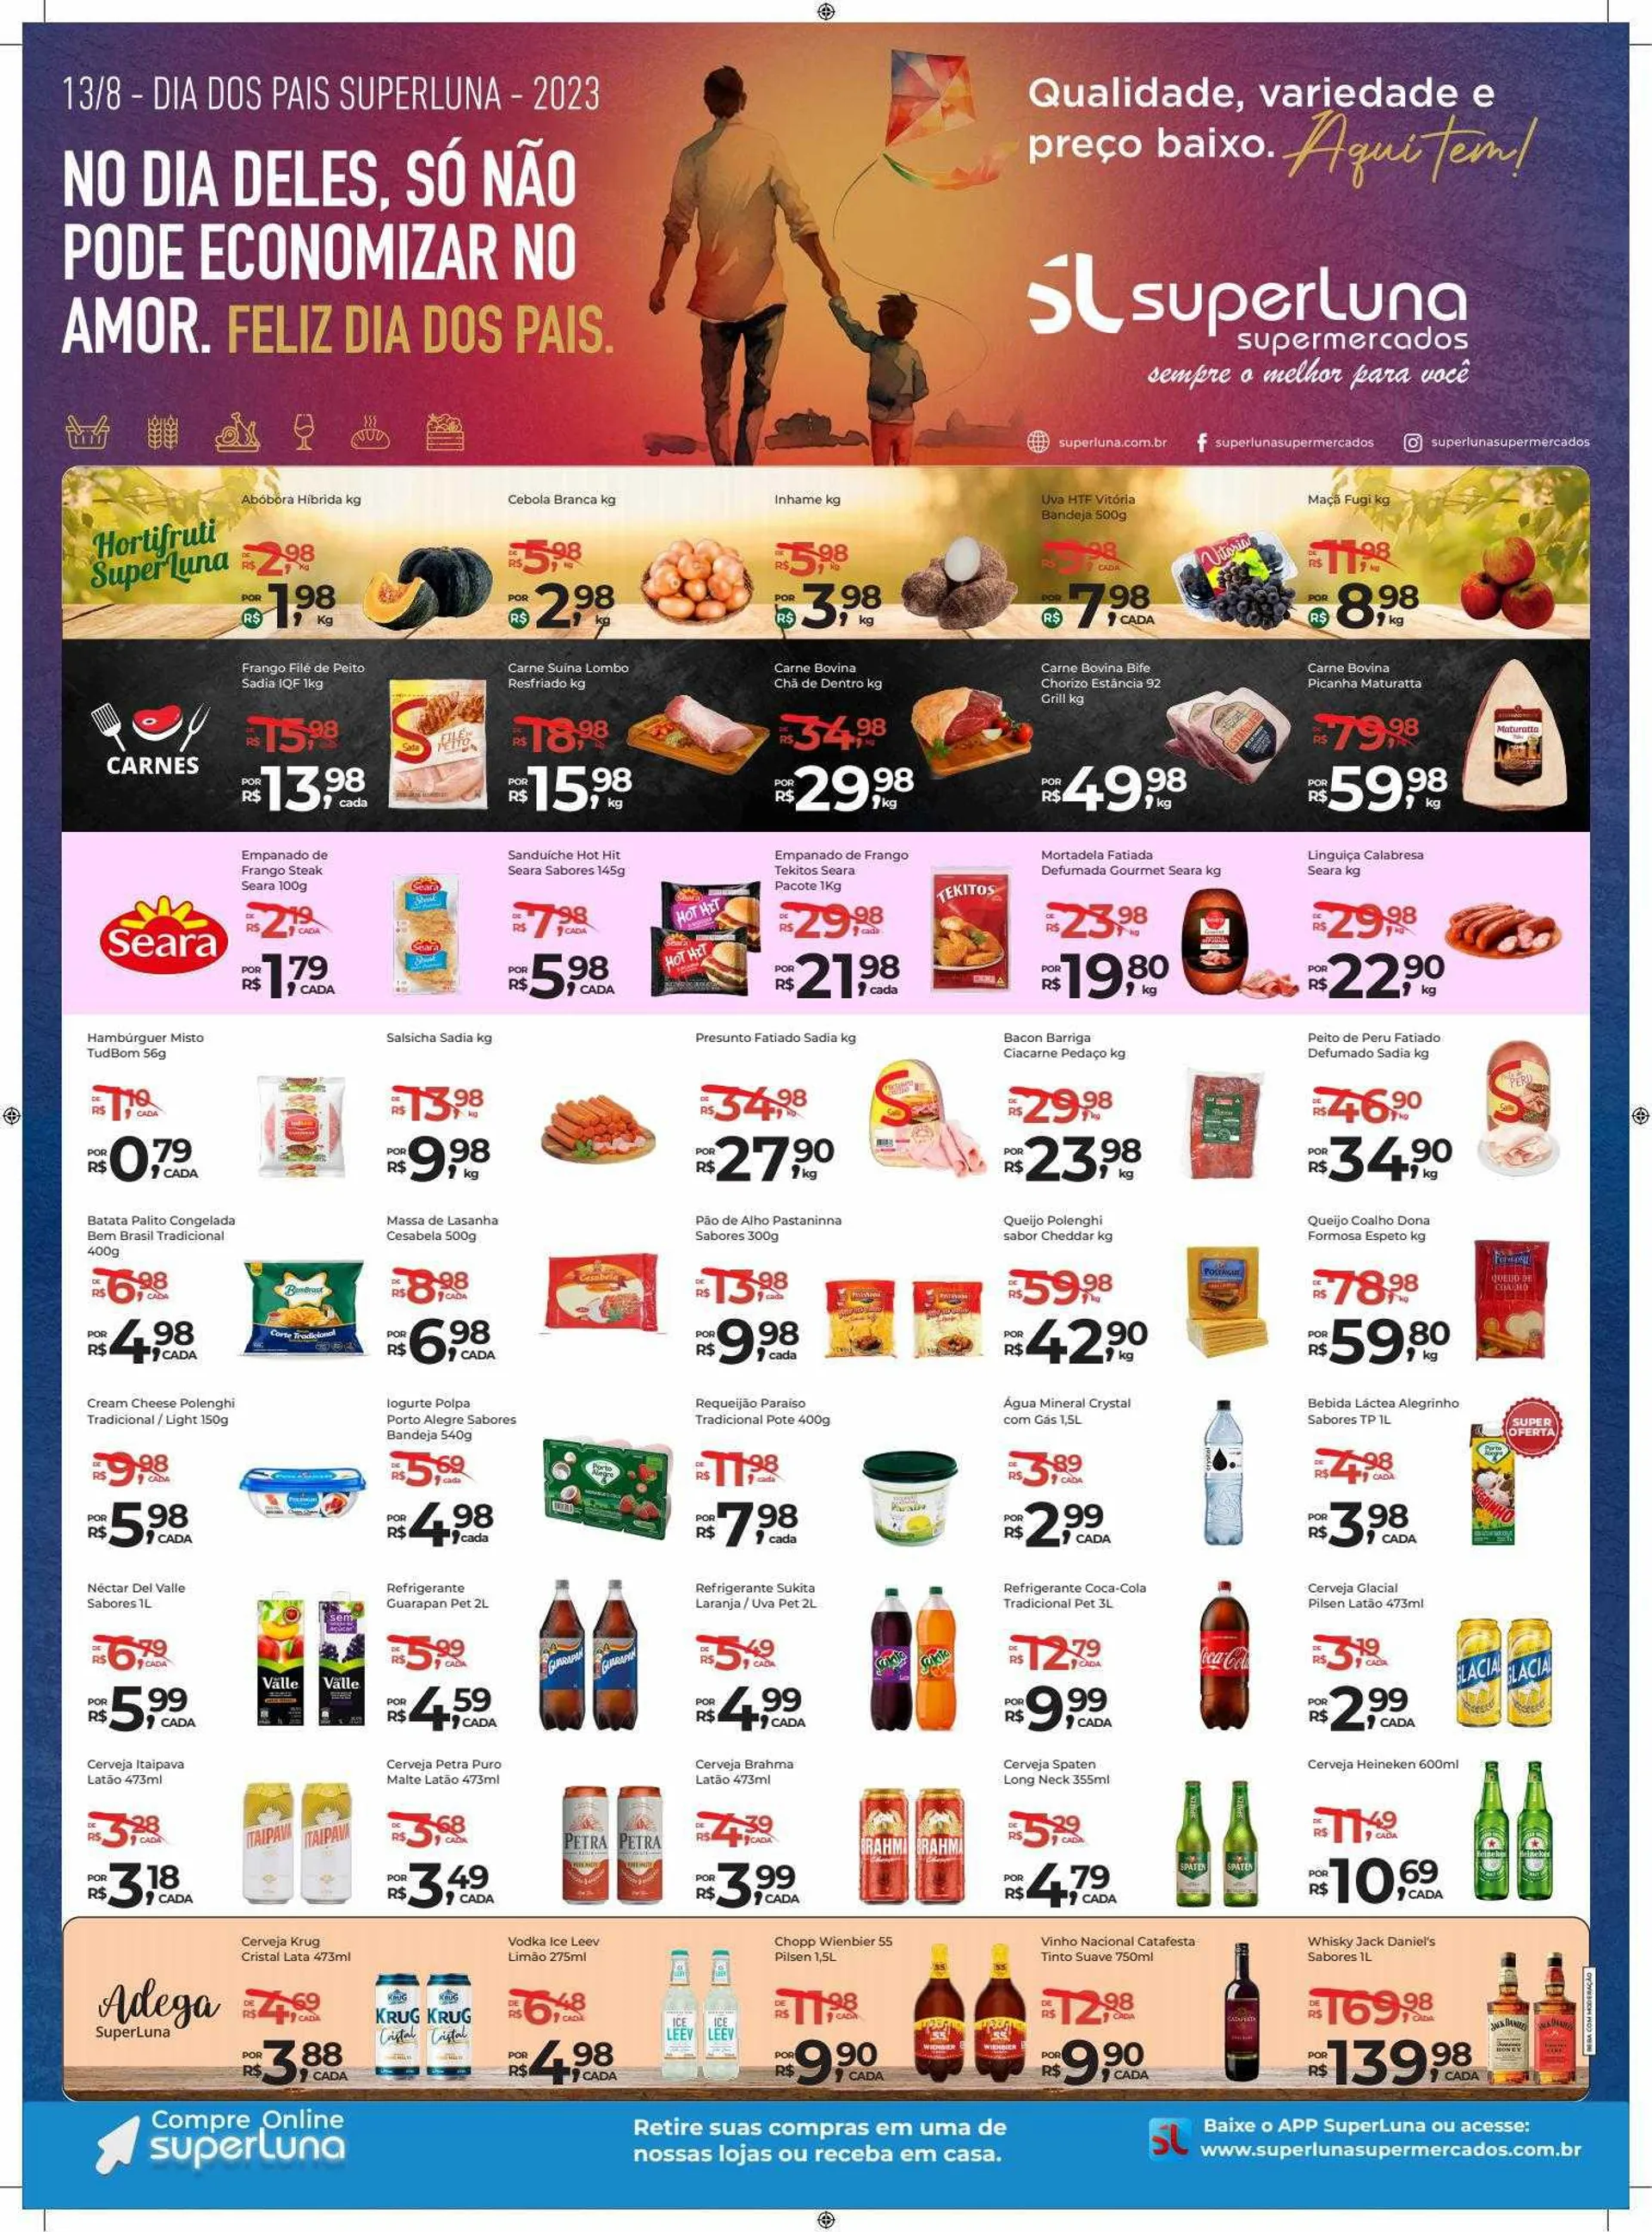 SuperLuna Supermercados